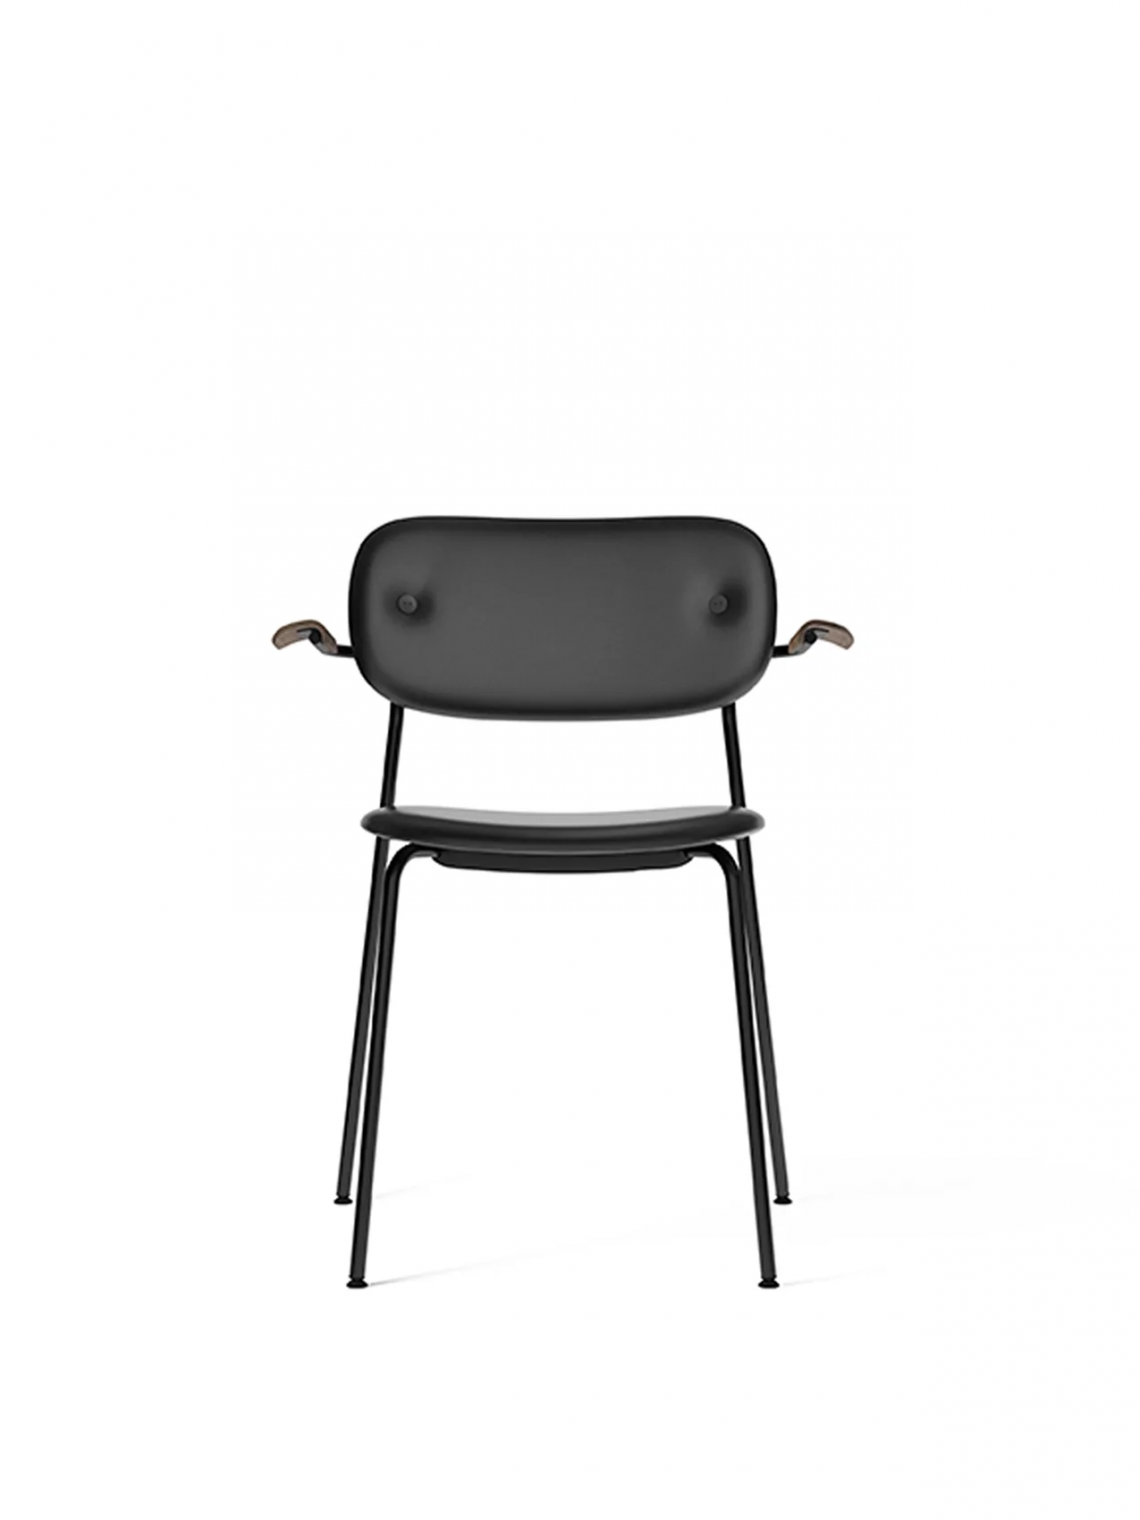 Co upholstered seat with armrest, Black餐椅细节图7